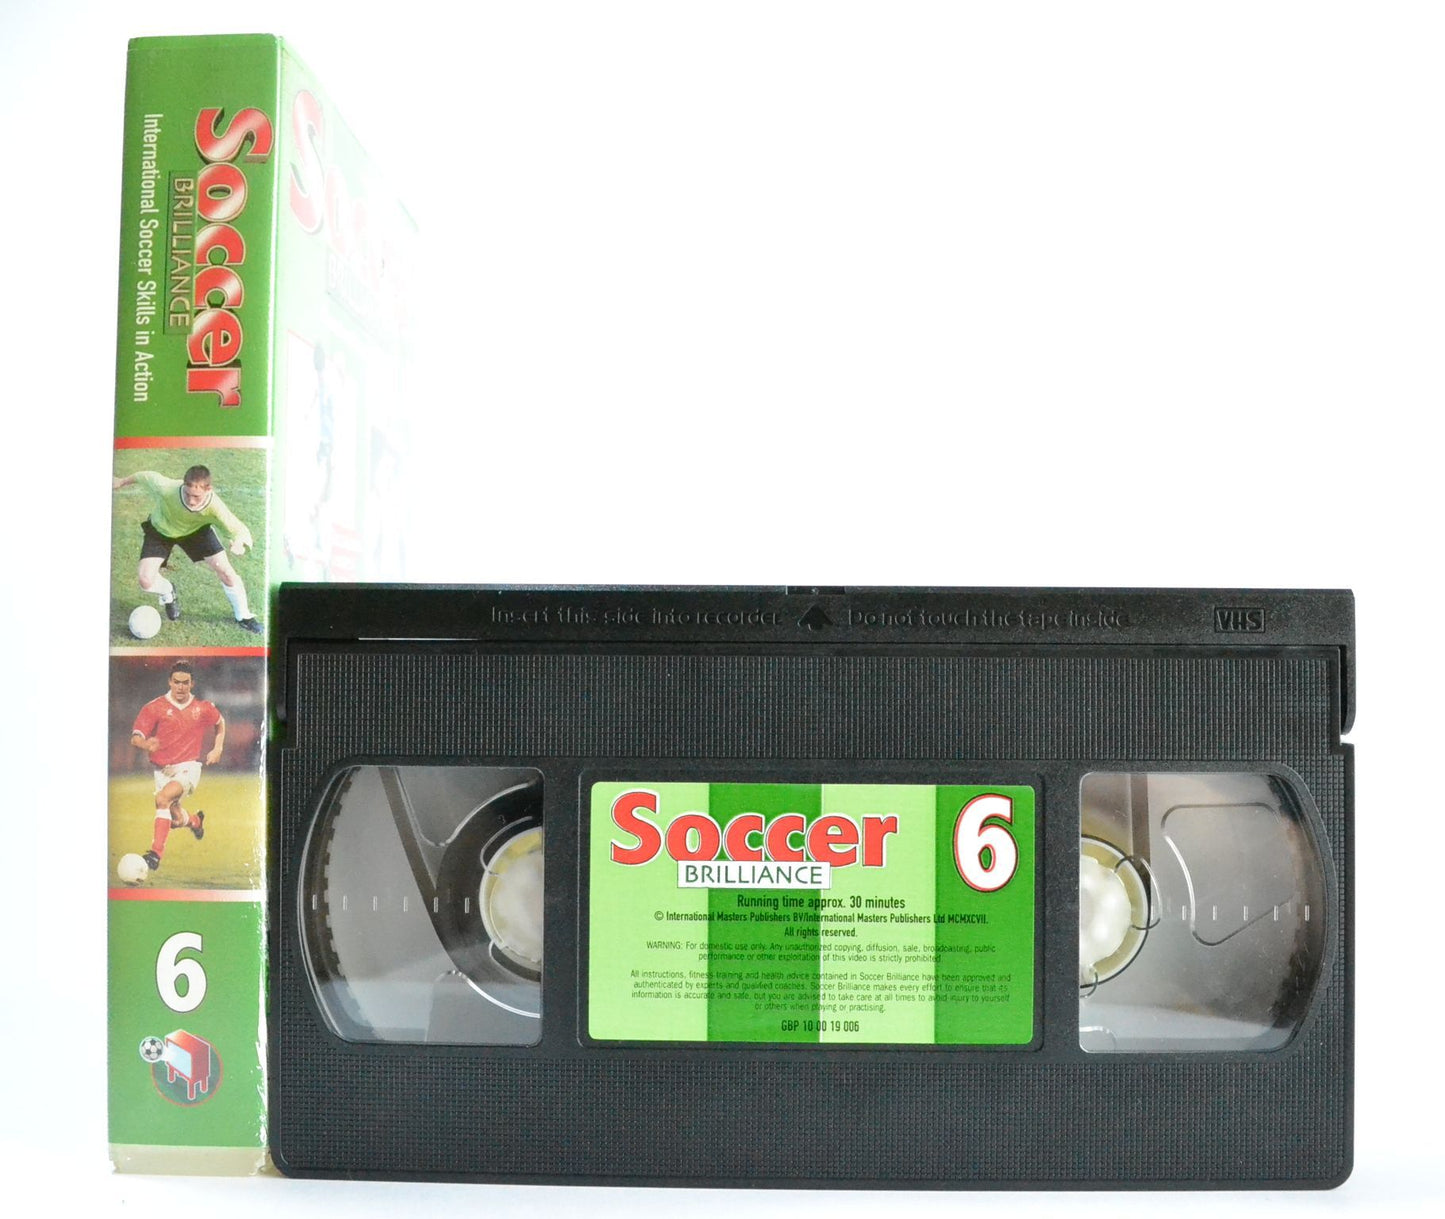 Soccer Brilliance 6: Maradona / Klinsmann [Feinting Explained] Bobby Charlton - VHS-